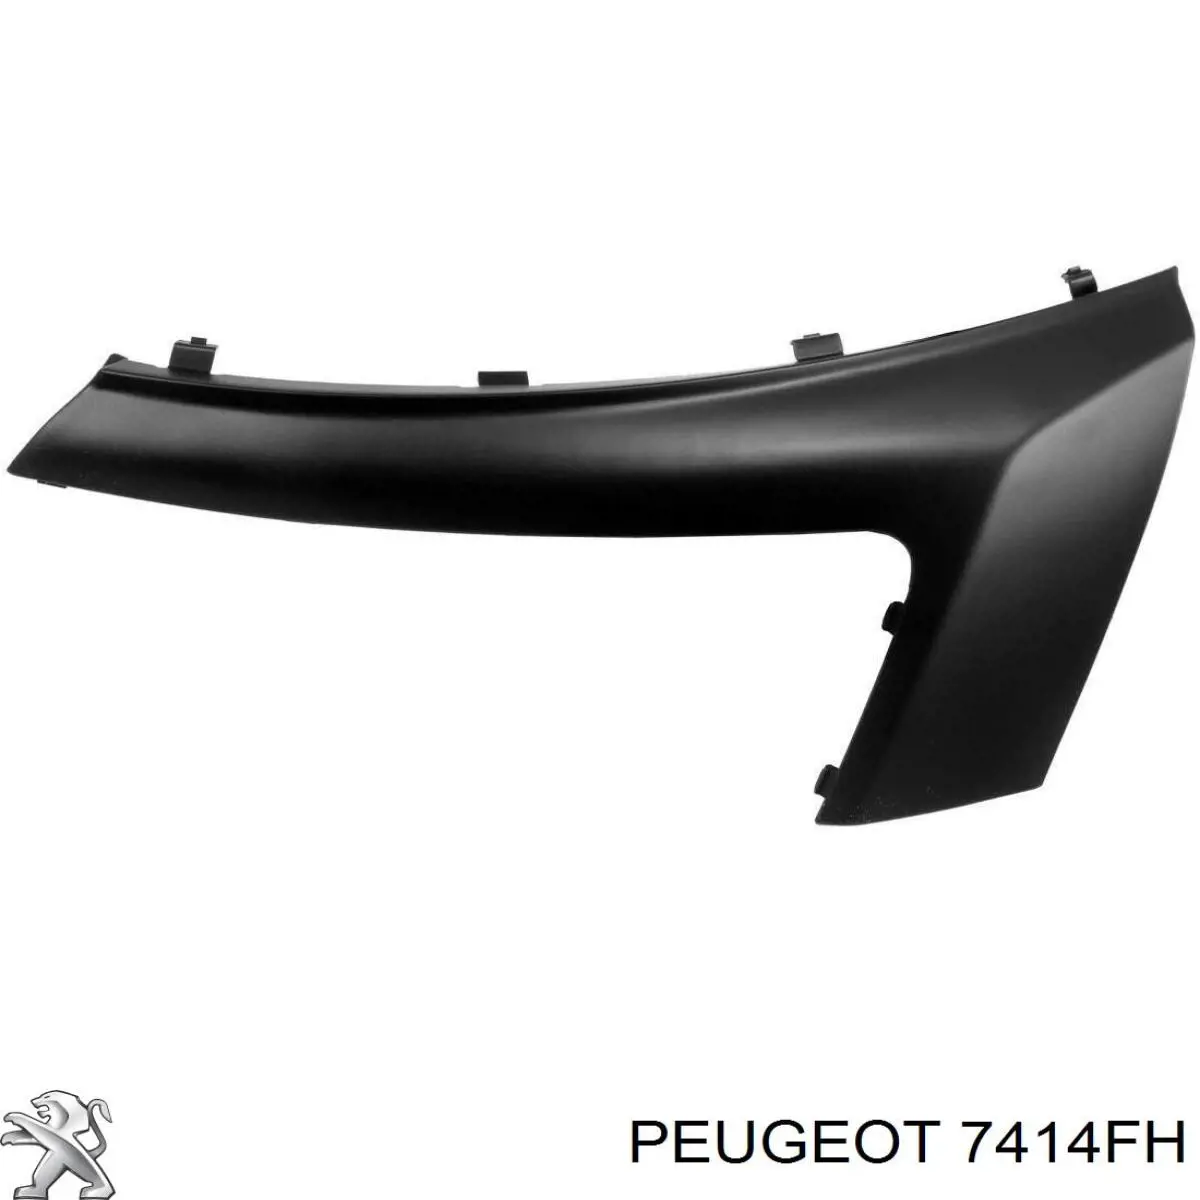 7414FH Peugeot/Citroen rejilla de antinieblas, parachoques delantero